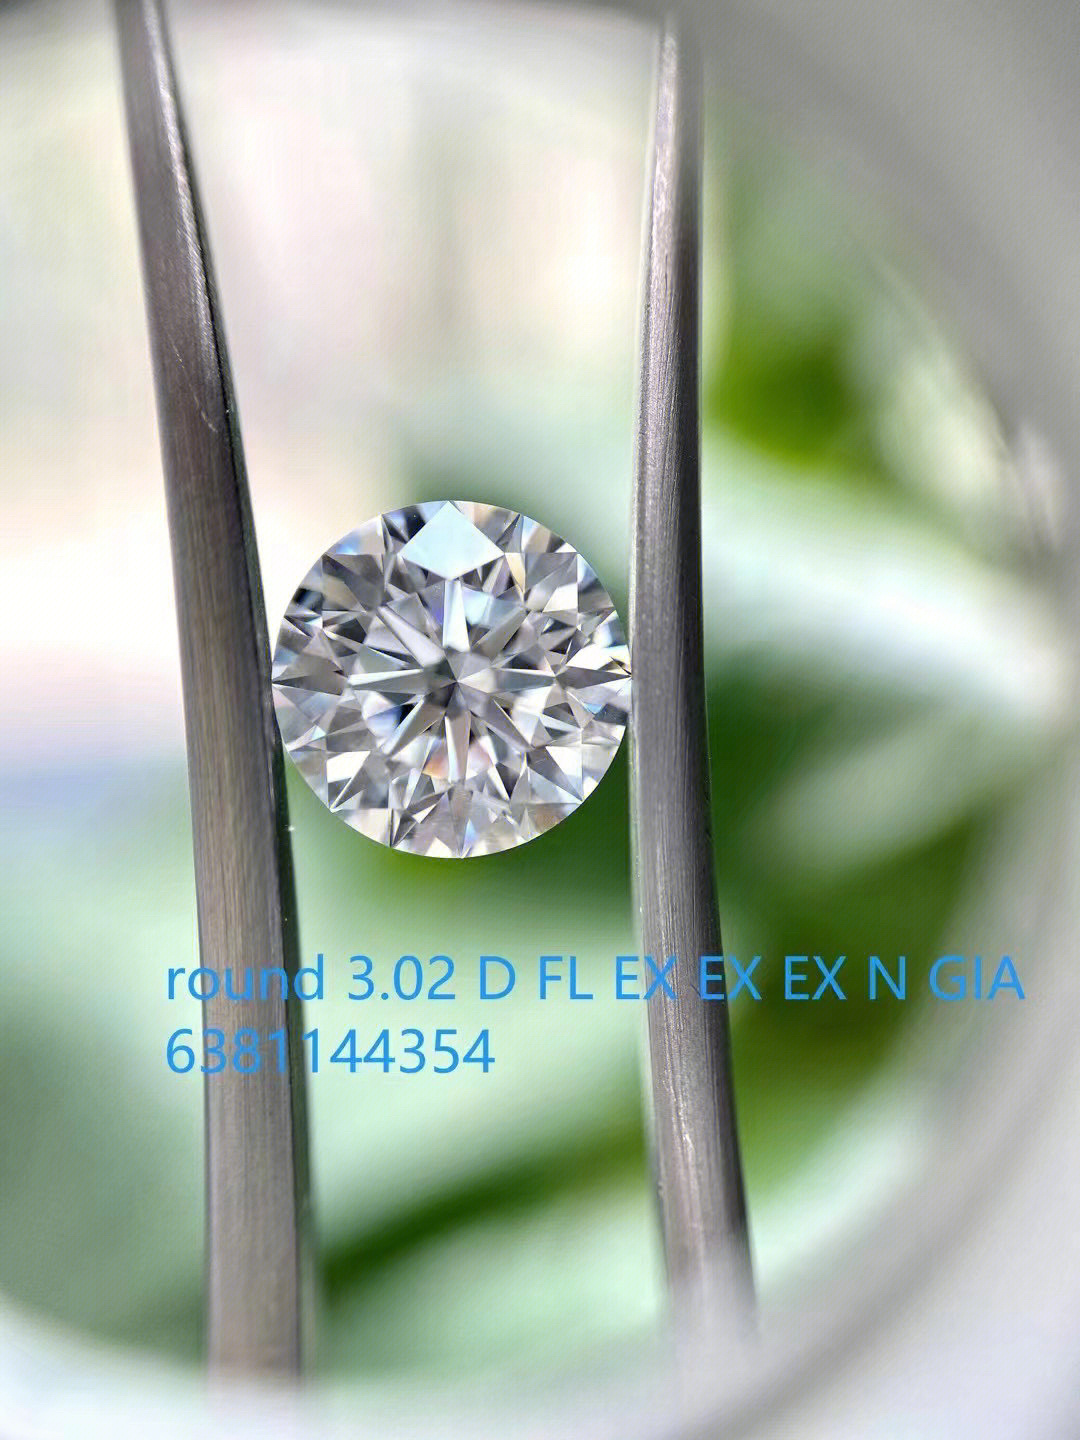 96钻石起源英文中钻石一词写作diamond,源于希腊文adamas,意思